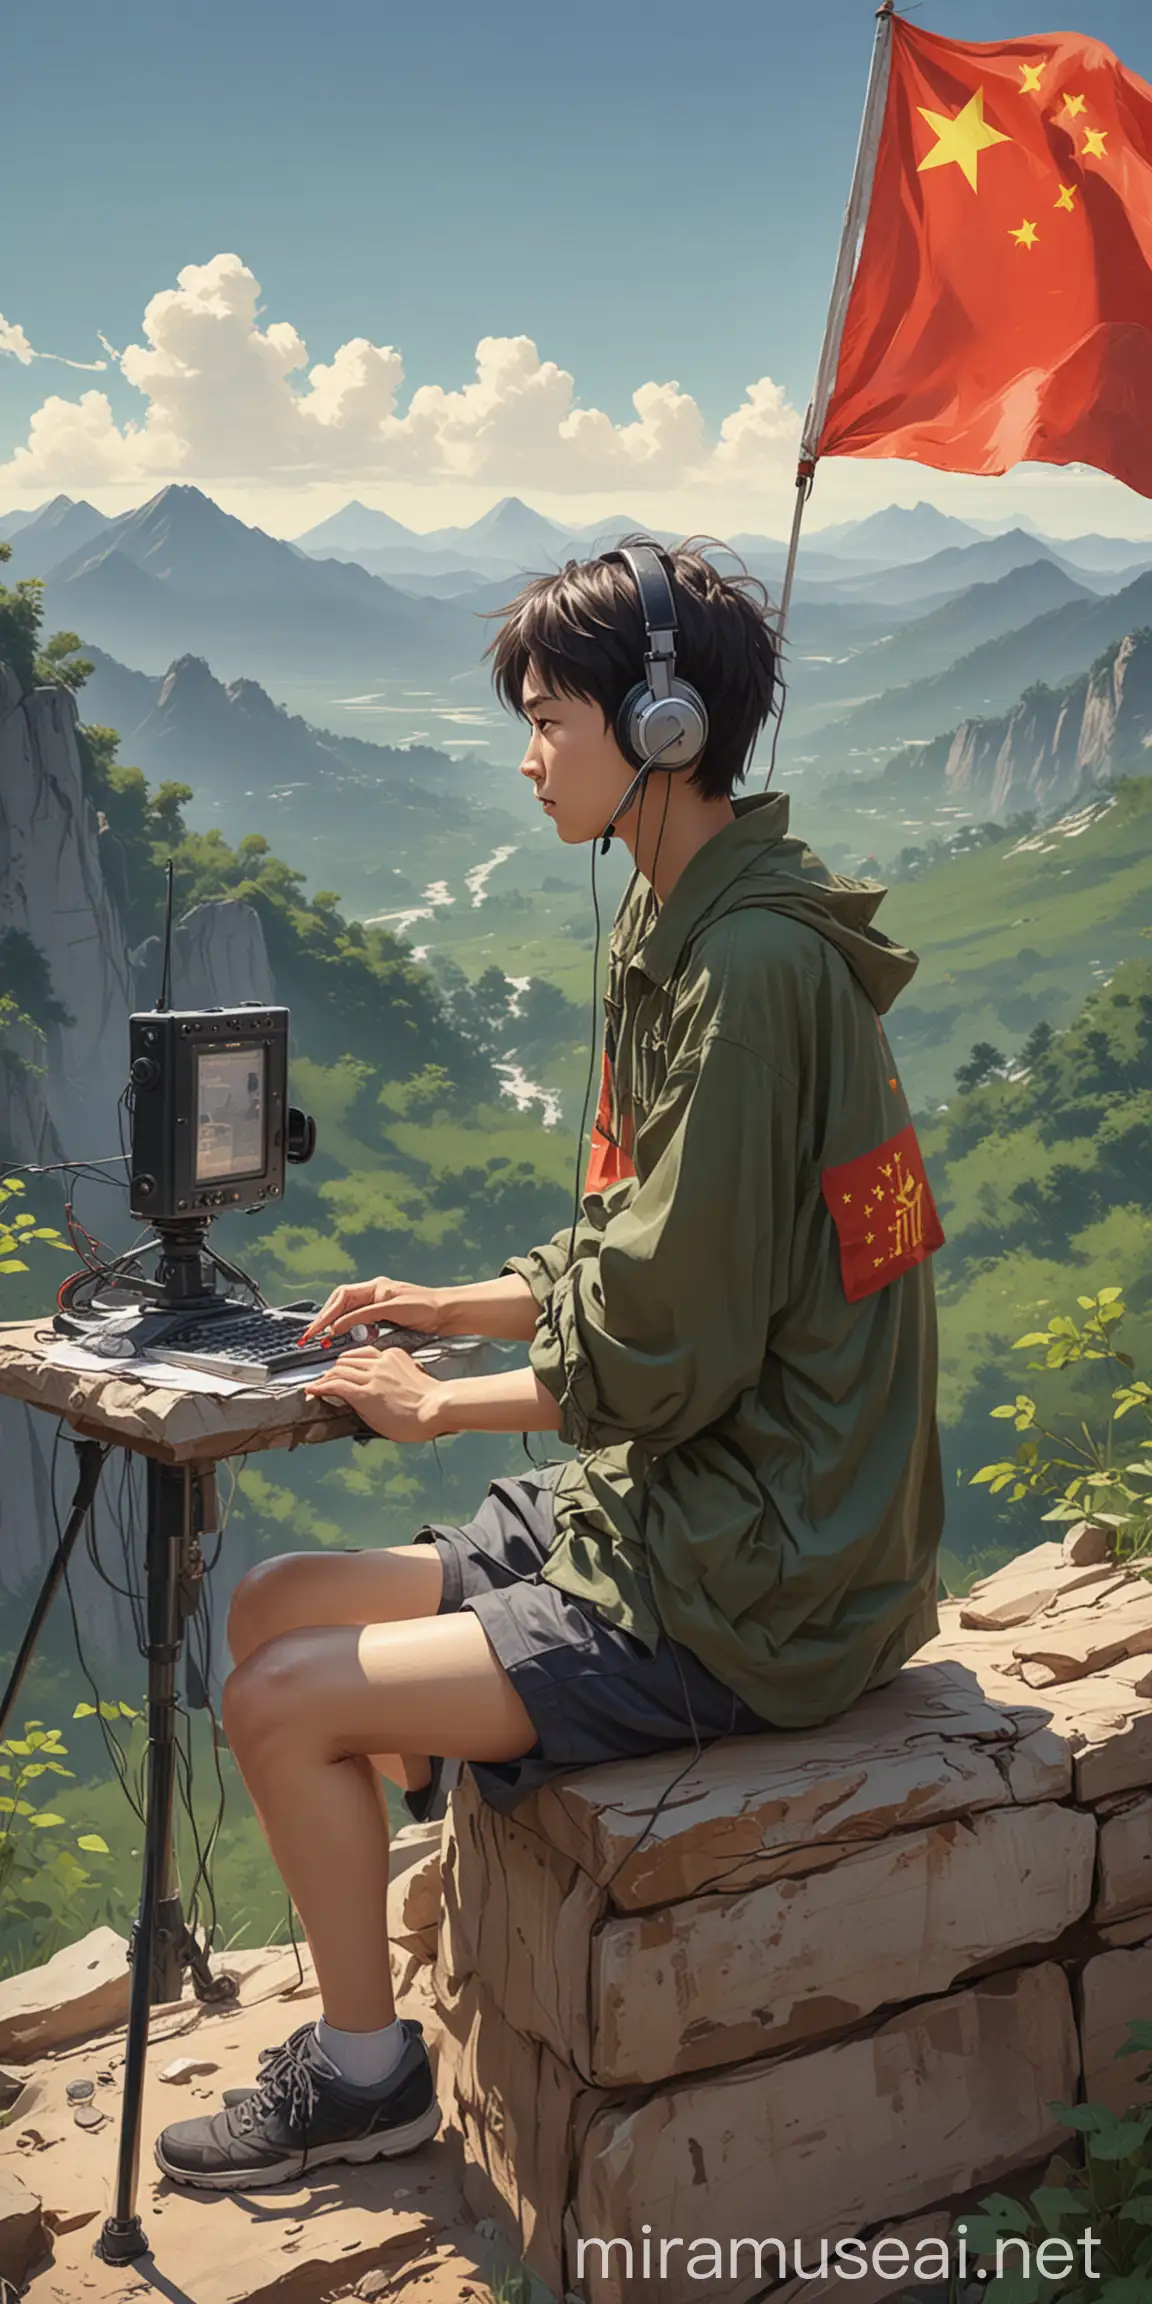 一个中国人在野外使用业余无线电台，人物穿休闲服，坐姿，有一面中国国旗，二次元，抽象卡通风格，人物在很远的地方，最好画质